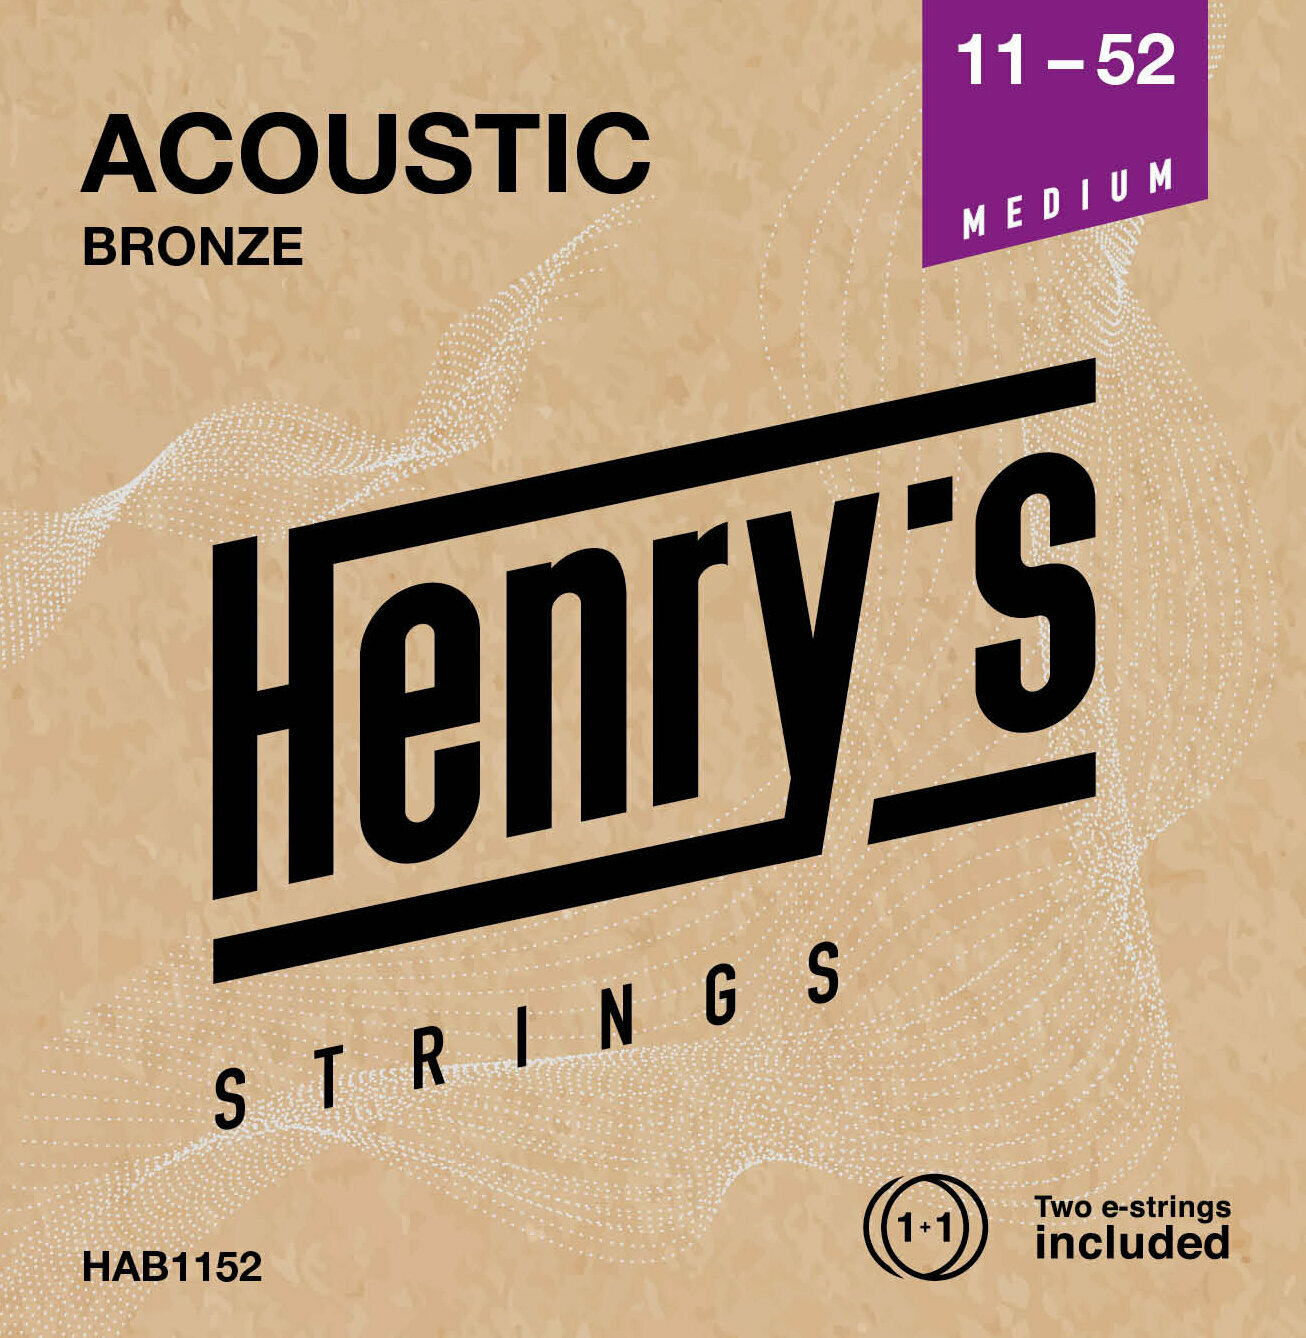 Χορδές για Ακουστική Κιθάρα Henry's Bronze 11-52